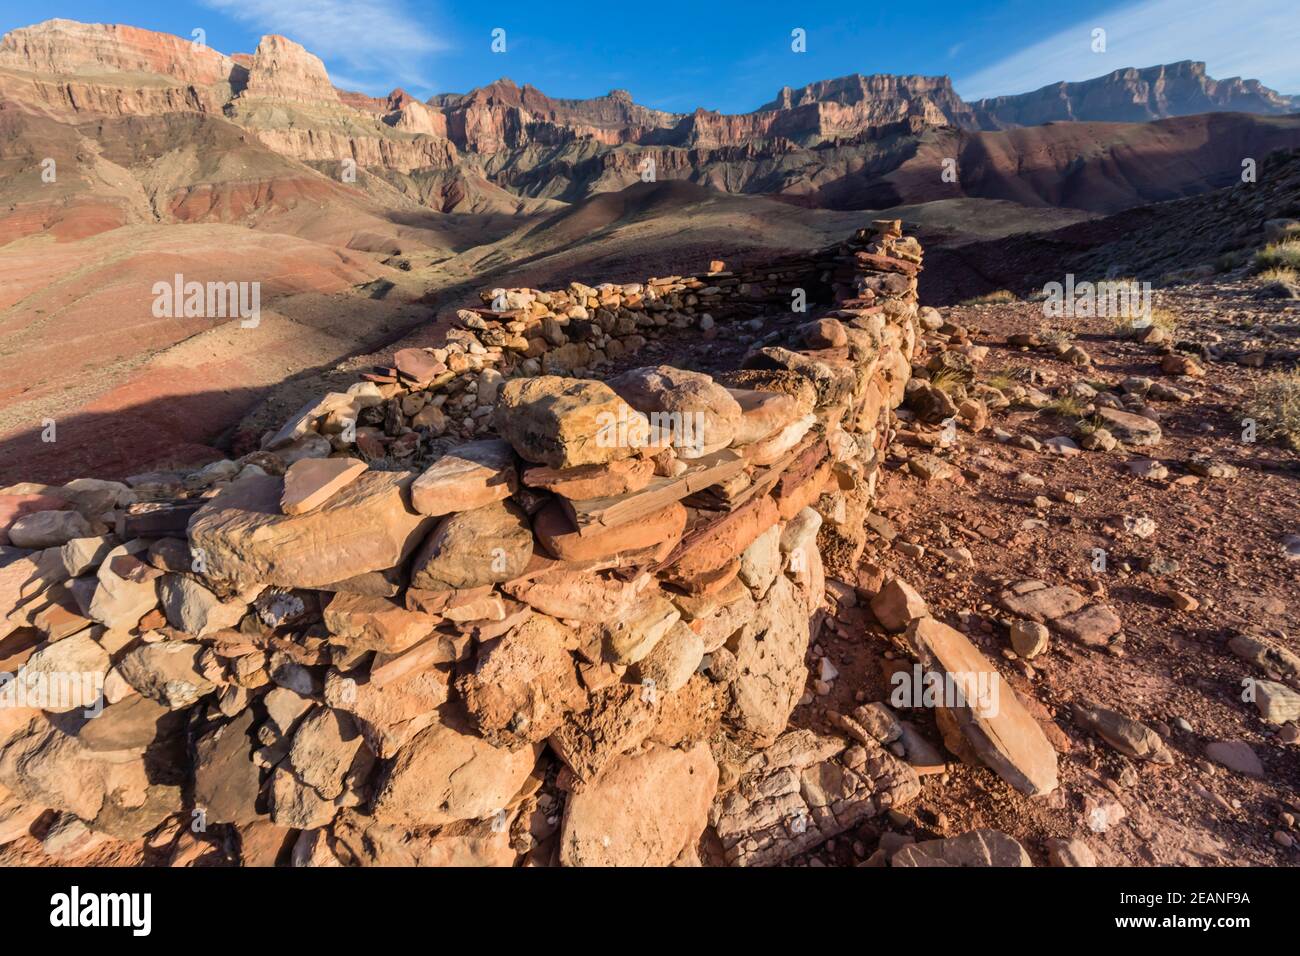 Ancestral Puebloan rovina a Desert View sul fiume Colorado, Grand Canyon National Park, patrimonio dell'umanità dell'UNESCO, Arizona, Stati Uniti Foto Stock